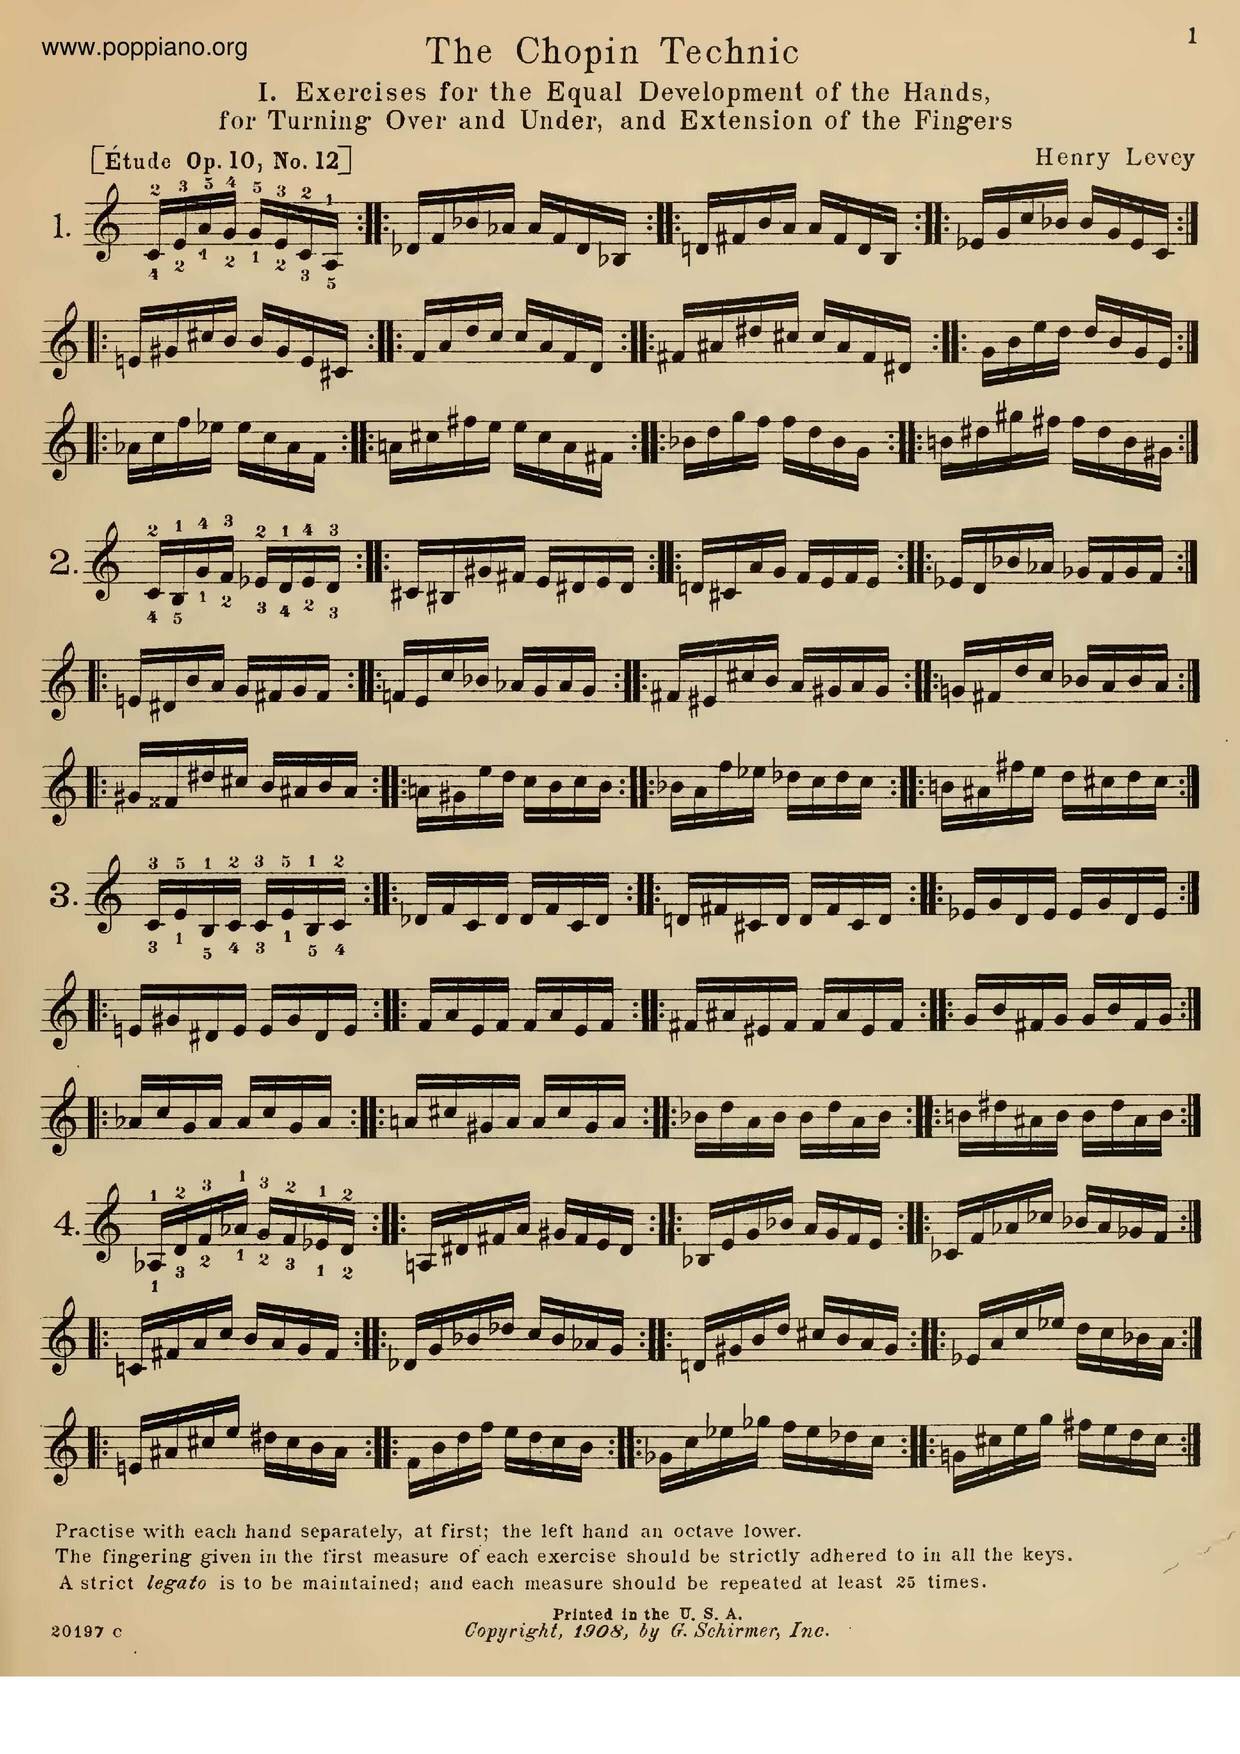 The Chopin Technique Score